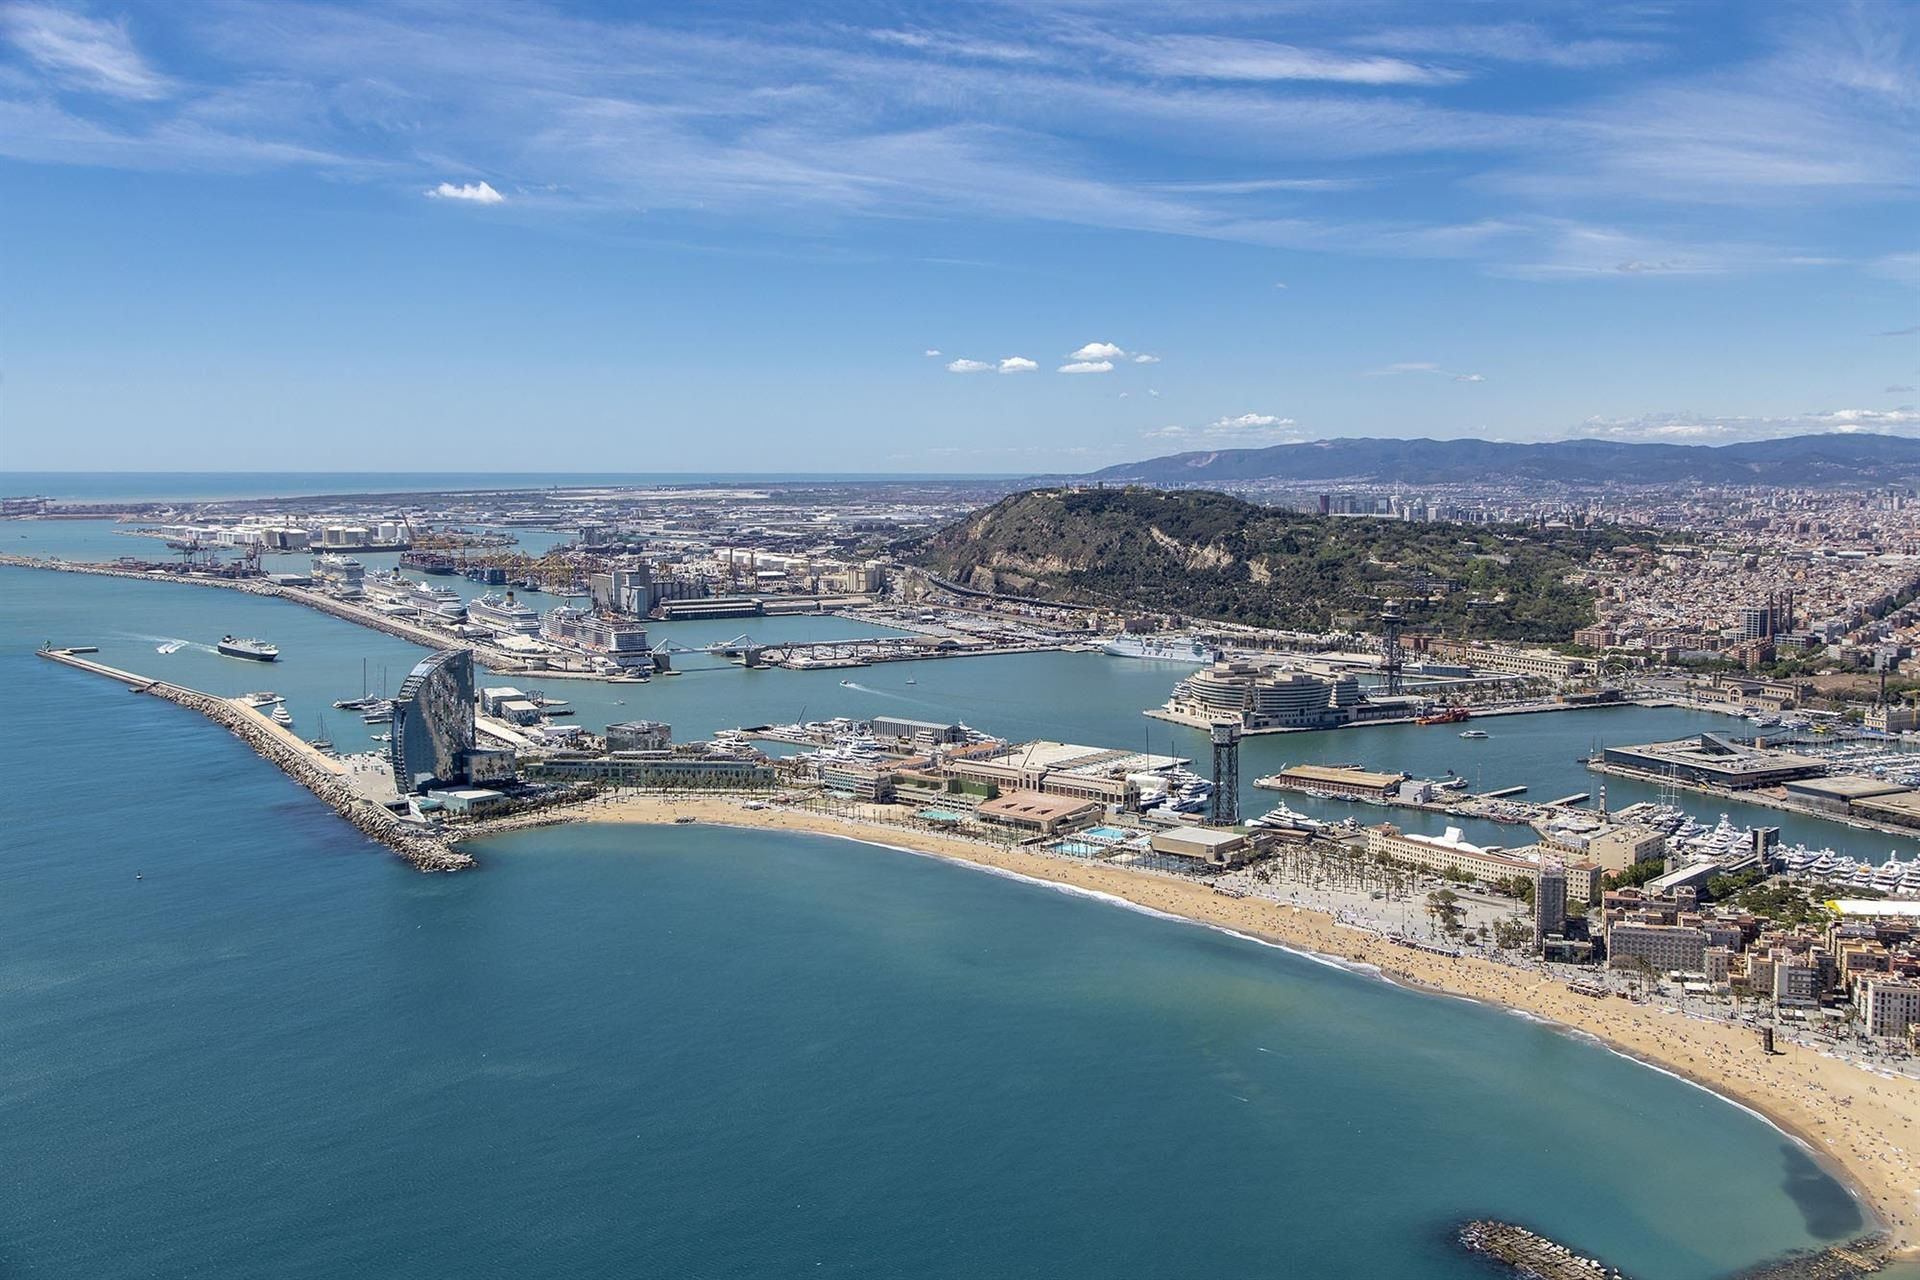 Imagen aérea del Puerto de Barcelona / PUERTO DE BARCELONA